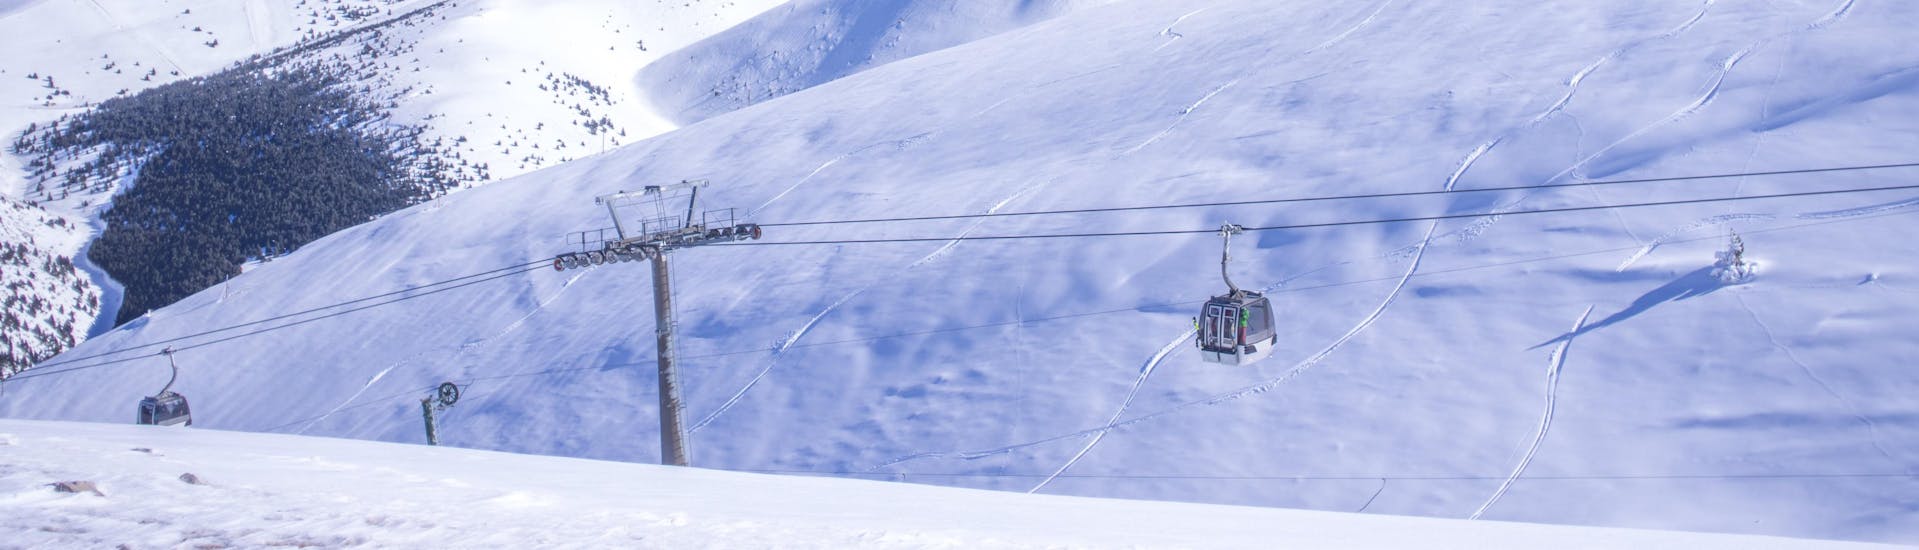 Una foto de una góndola en la estación de esquí catalana de Masella, donde los visitantes pueden reservar un curso de esquí en una de las escuelas de esquí locales.